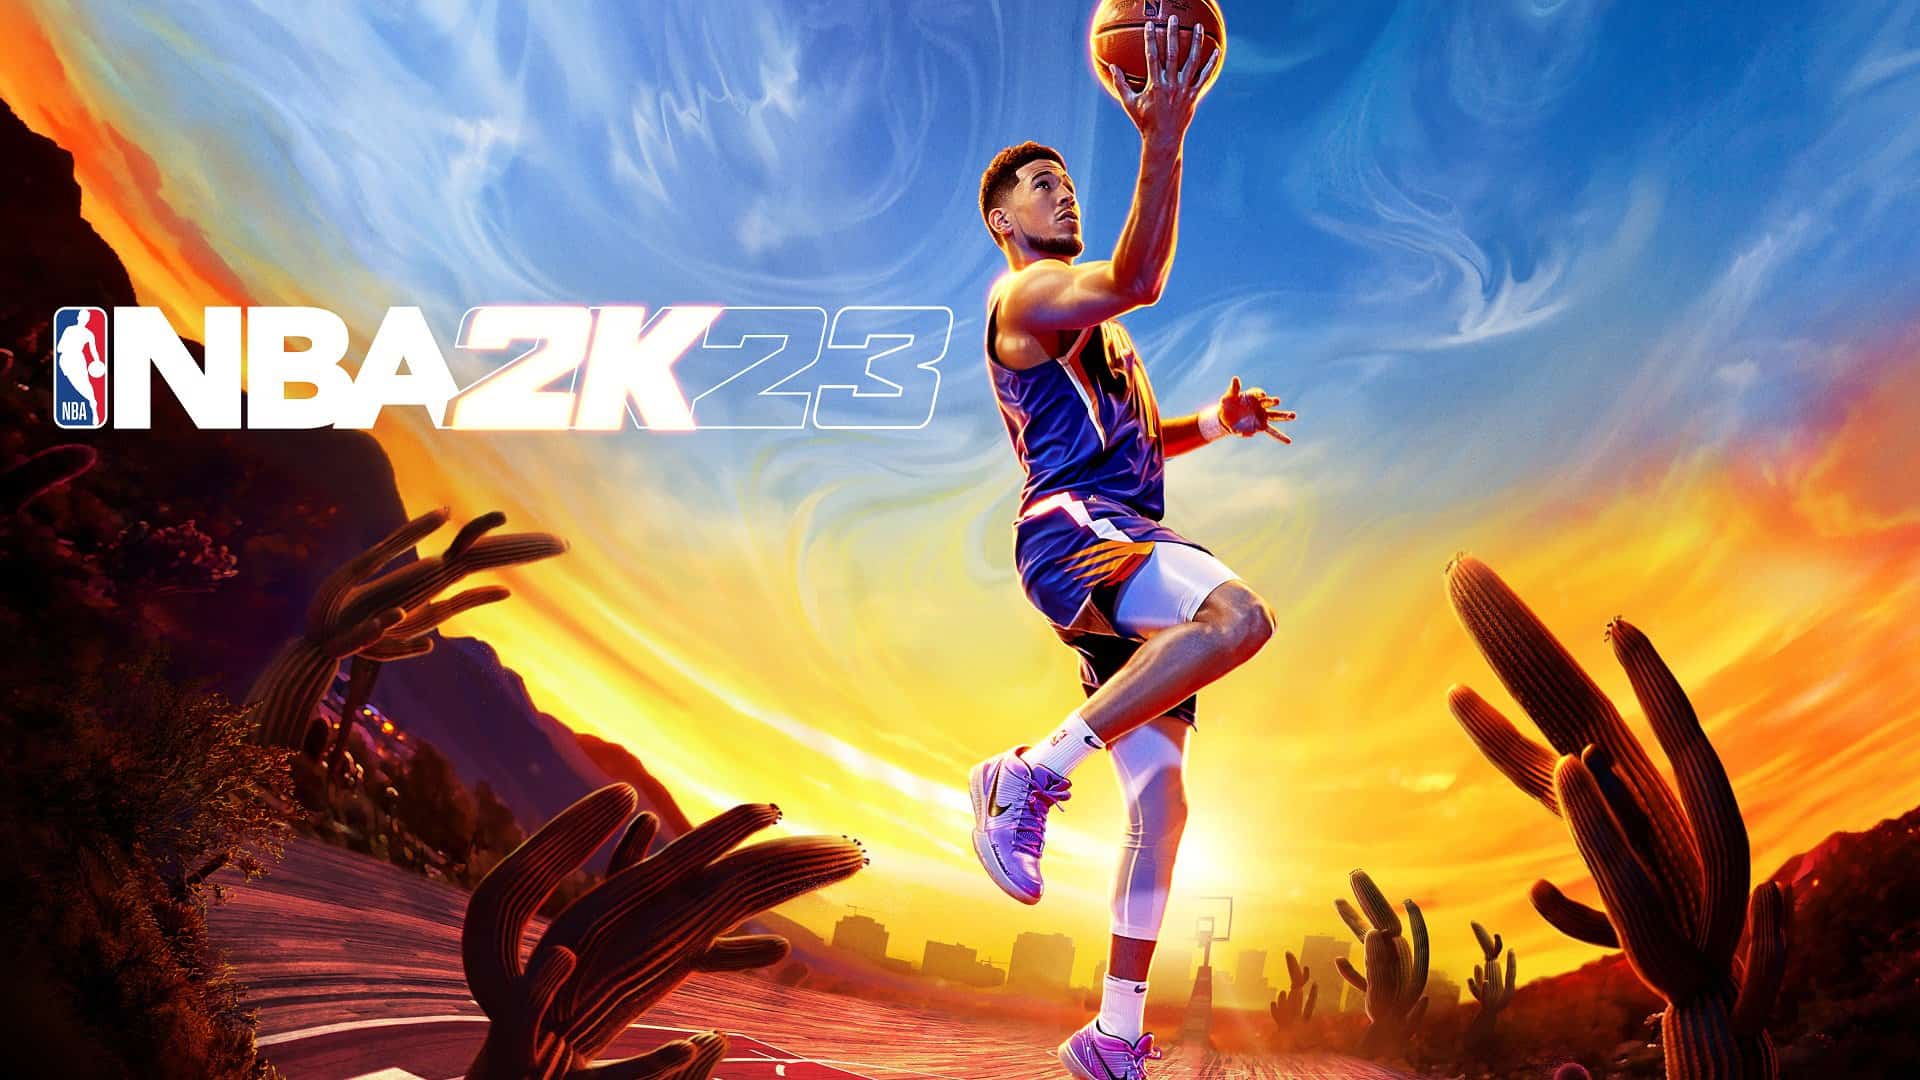 NBA 2K23: Predicted Top 10 player ratings